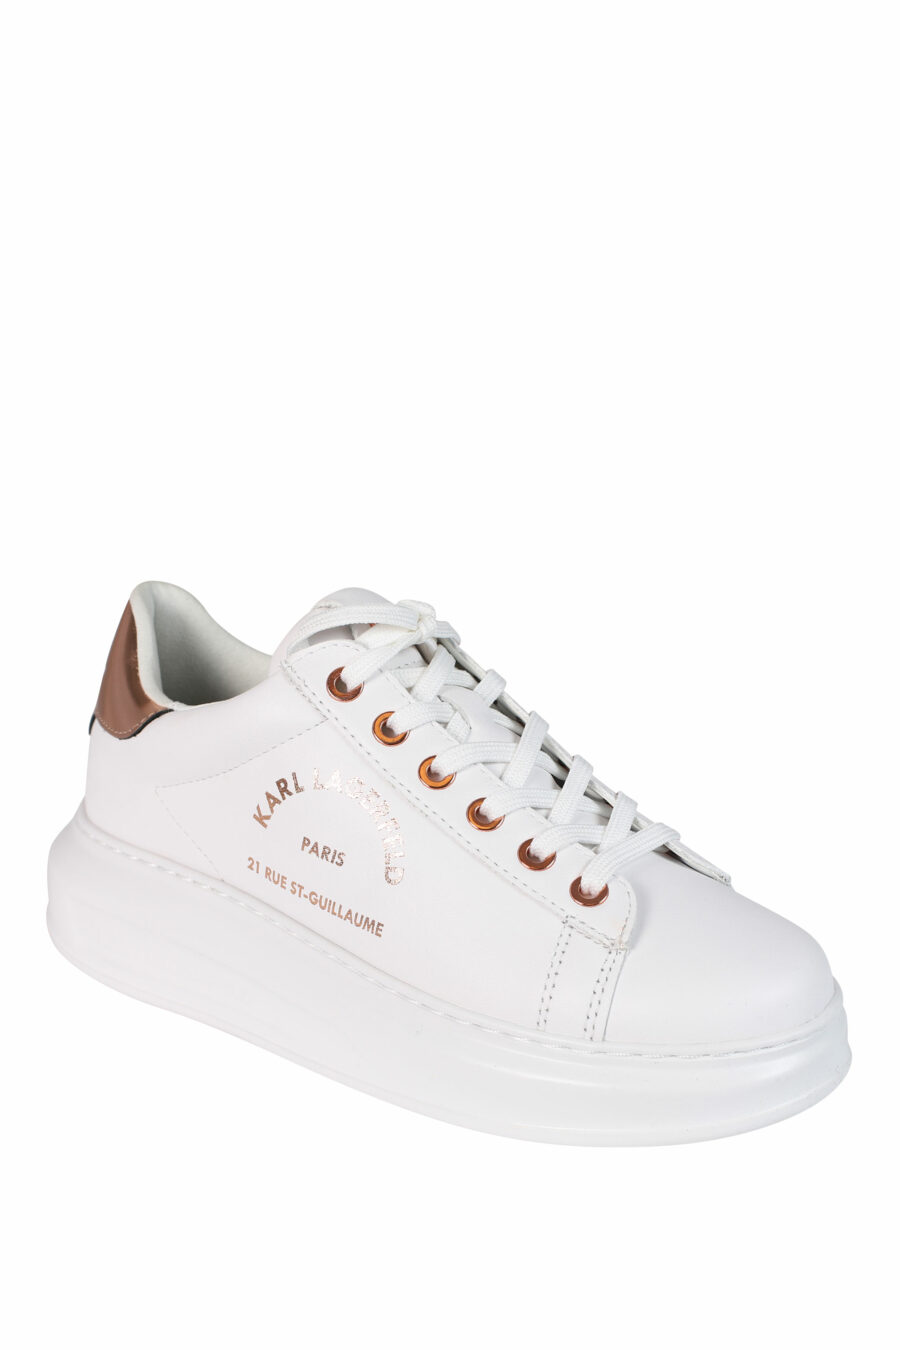 Zapatillas blancas con detalles rosa y logo "rue st guillaume" - 5059529231773 2